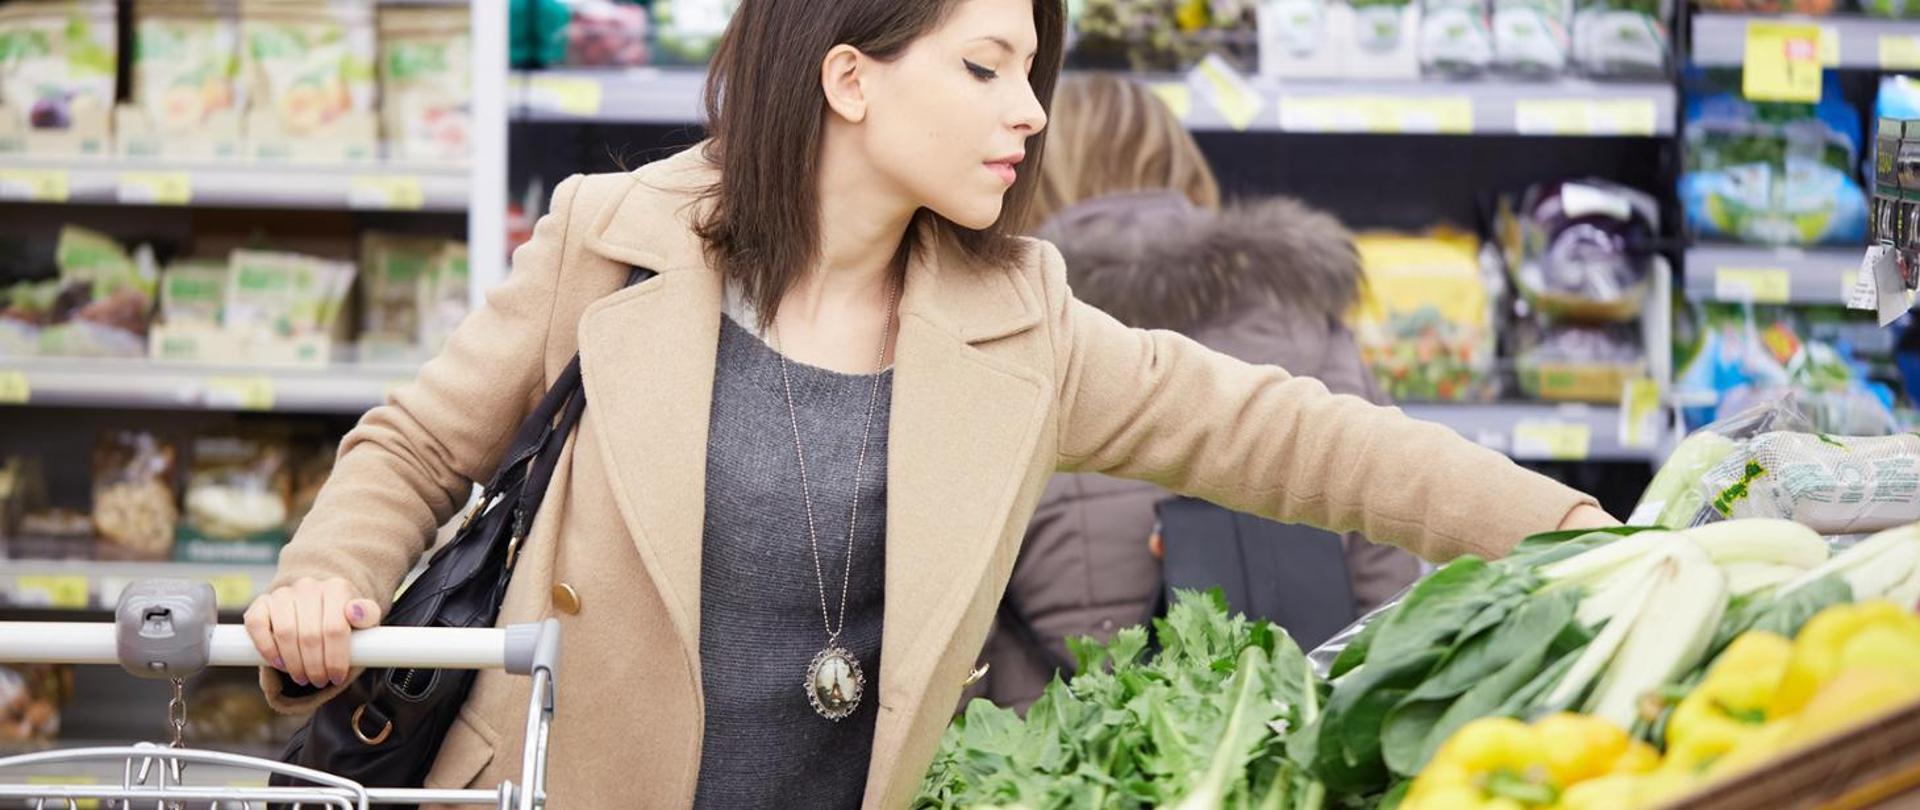 na planszy kobieta wybierająca warzywa na stoisku